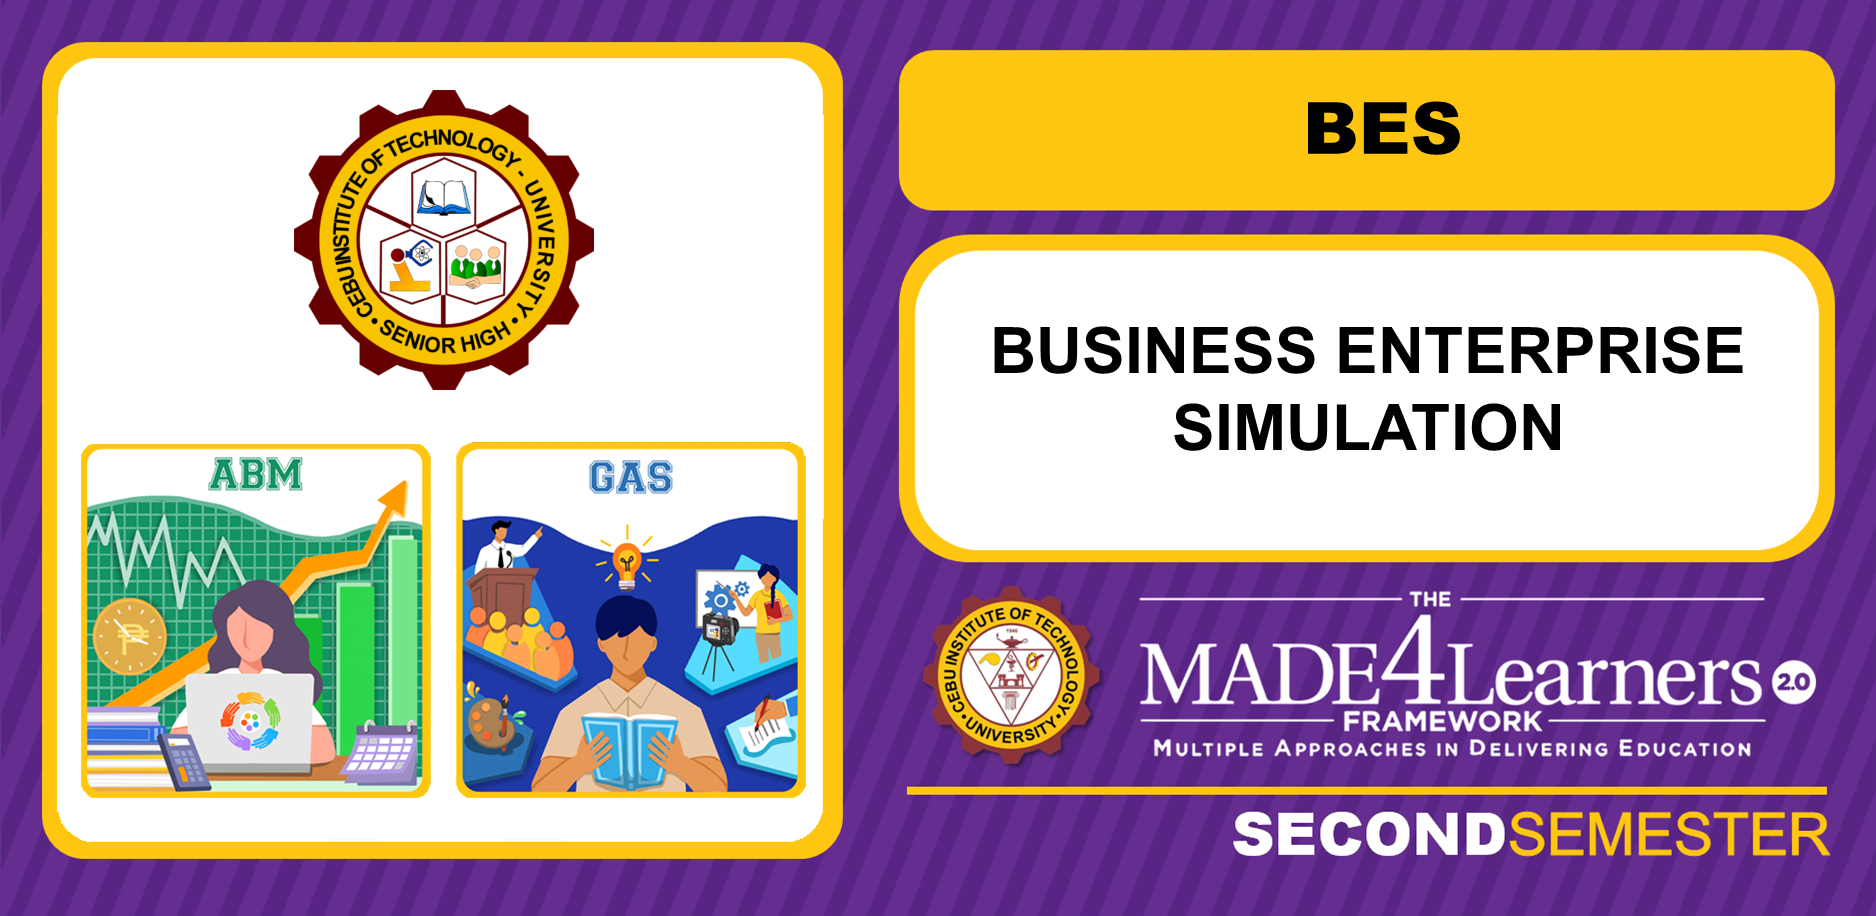 BES: Business Enterprise Simulation (Boncales)